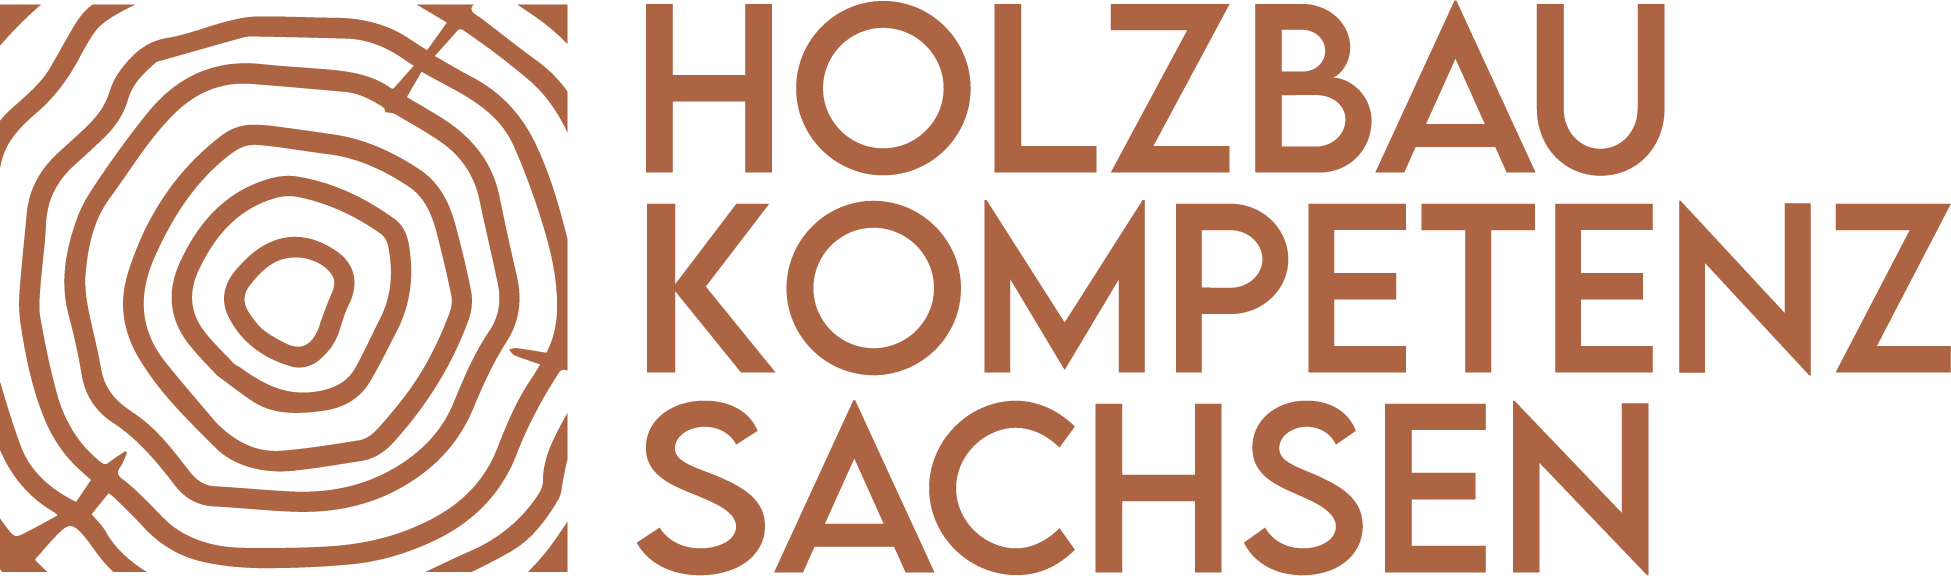 Logo HKS (Holzbau Kompetenz Sachsen GmbH | Nachhaltige Holzbauweise in Sachsen) mit voll title